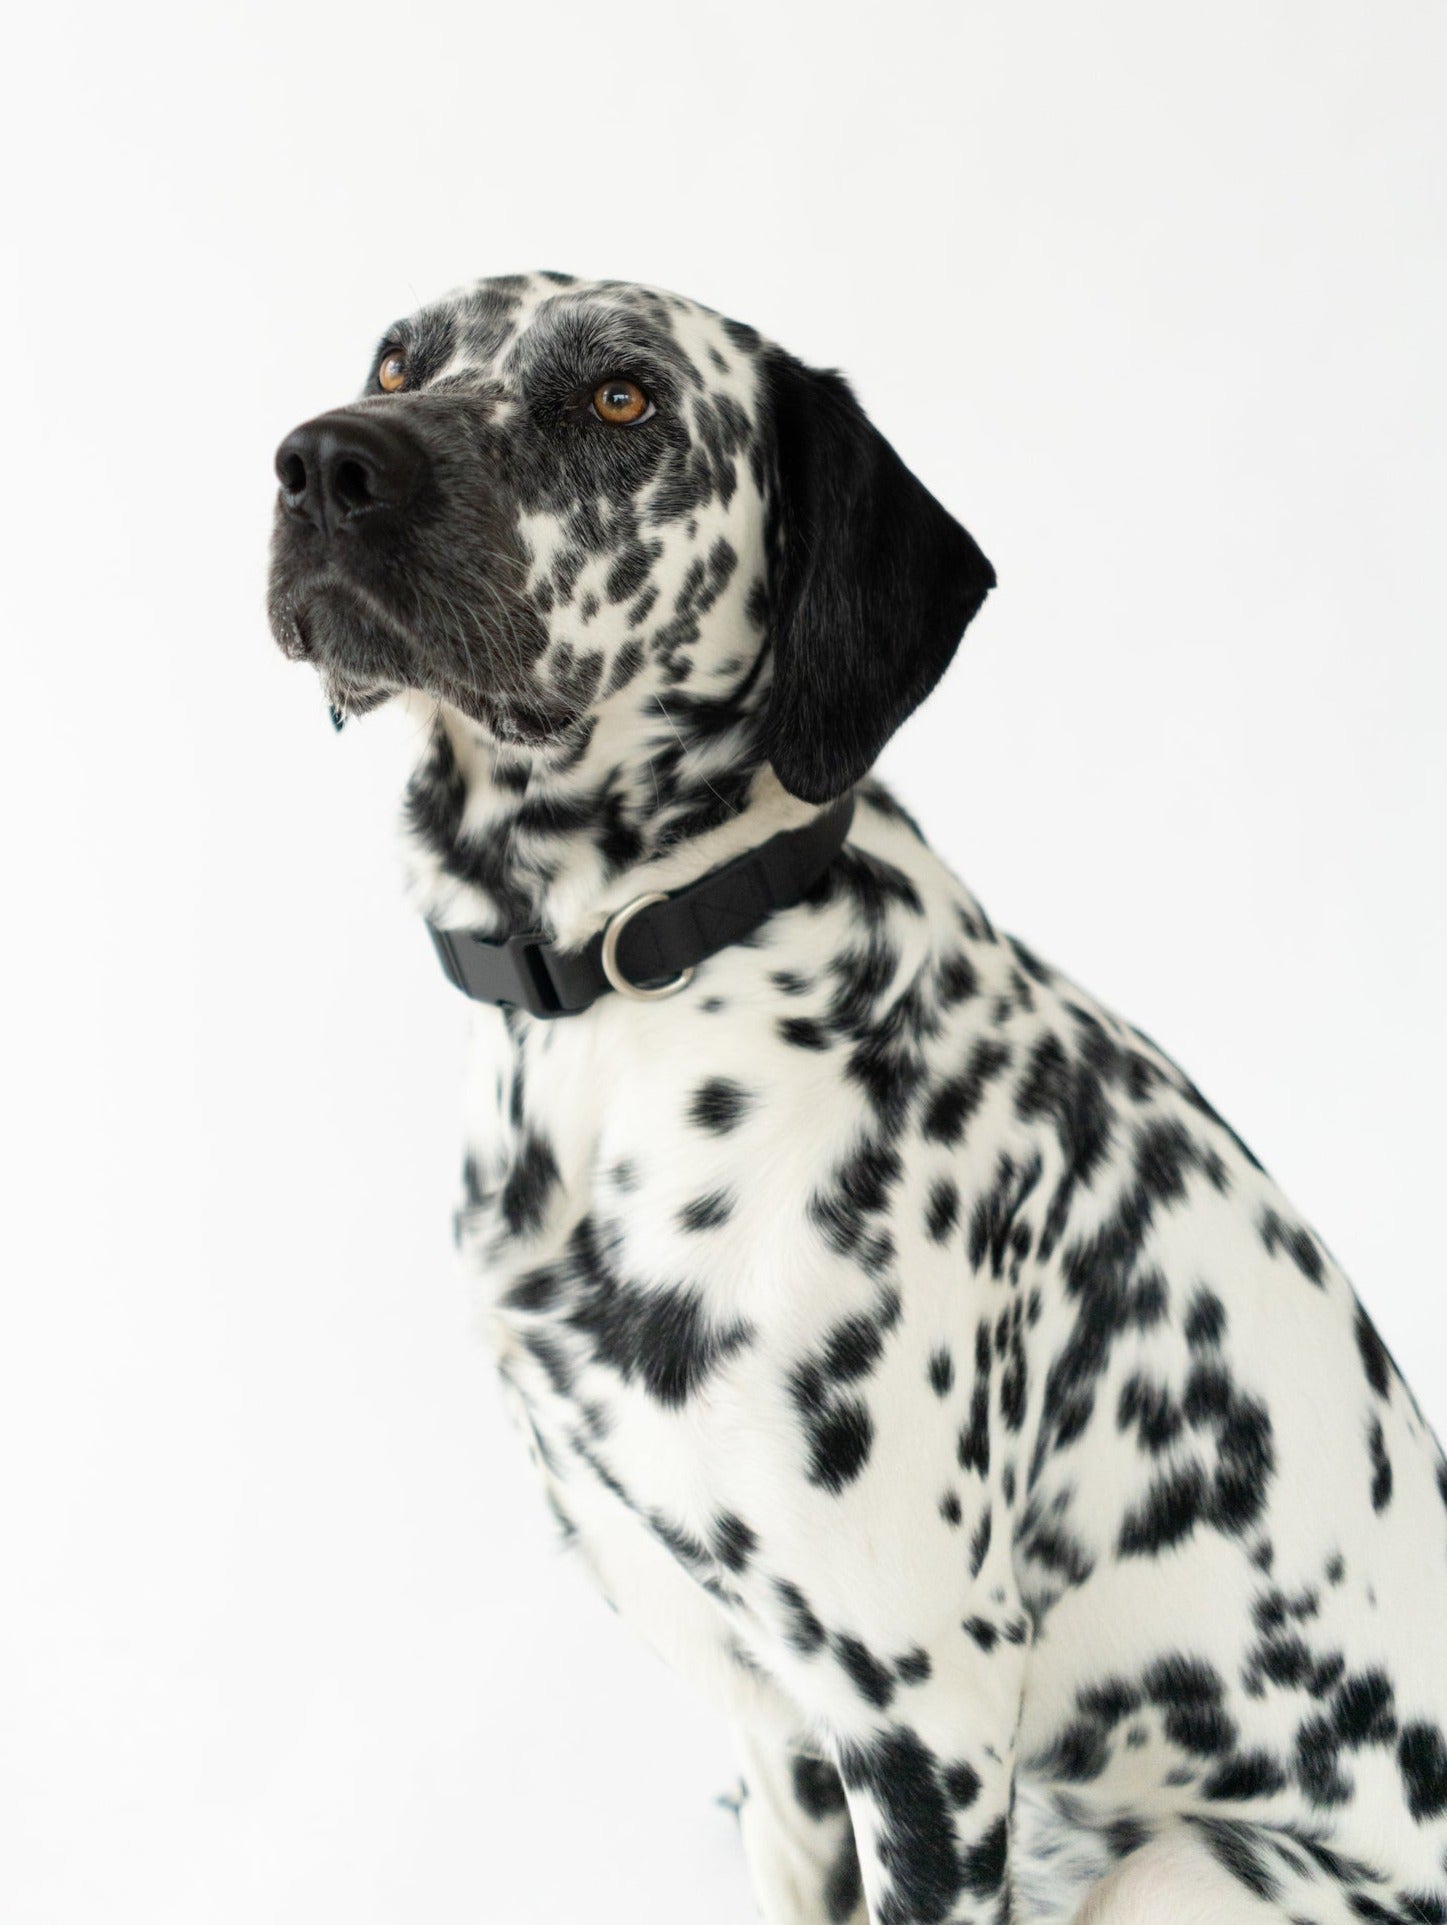 Medium Dog Collar